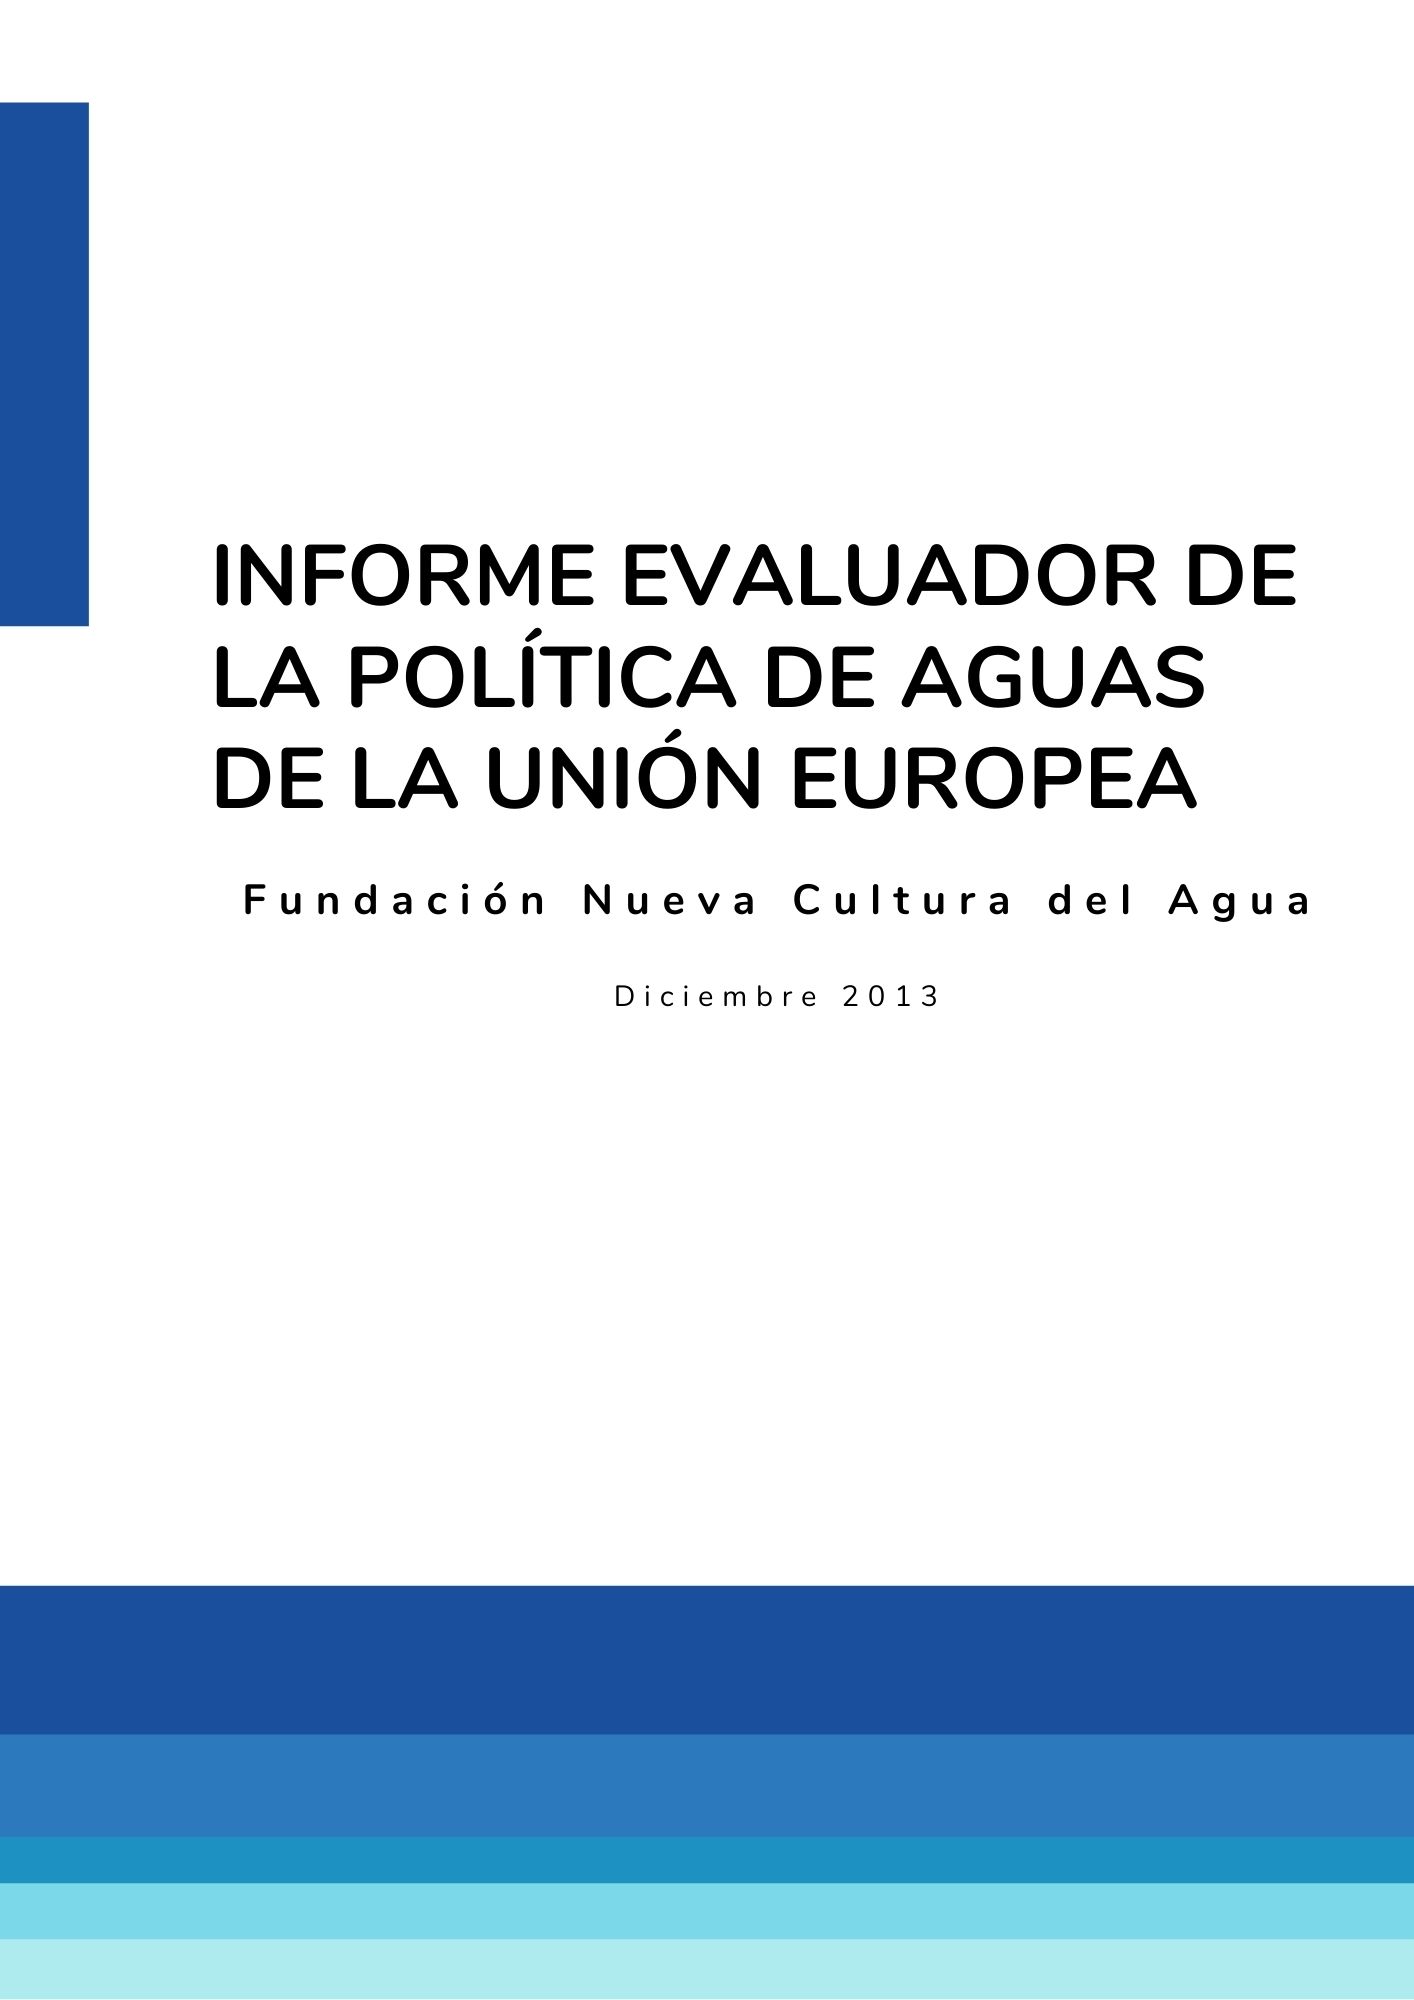 Informe evaluador de la política de aguas de la Unión Europea